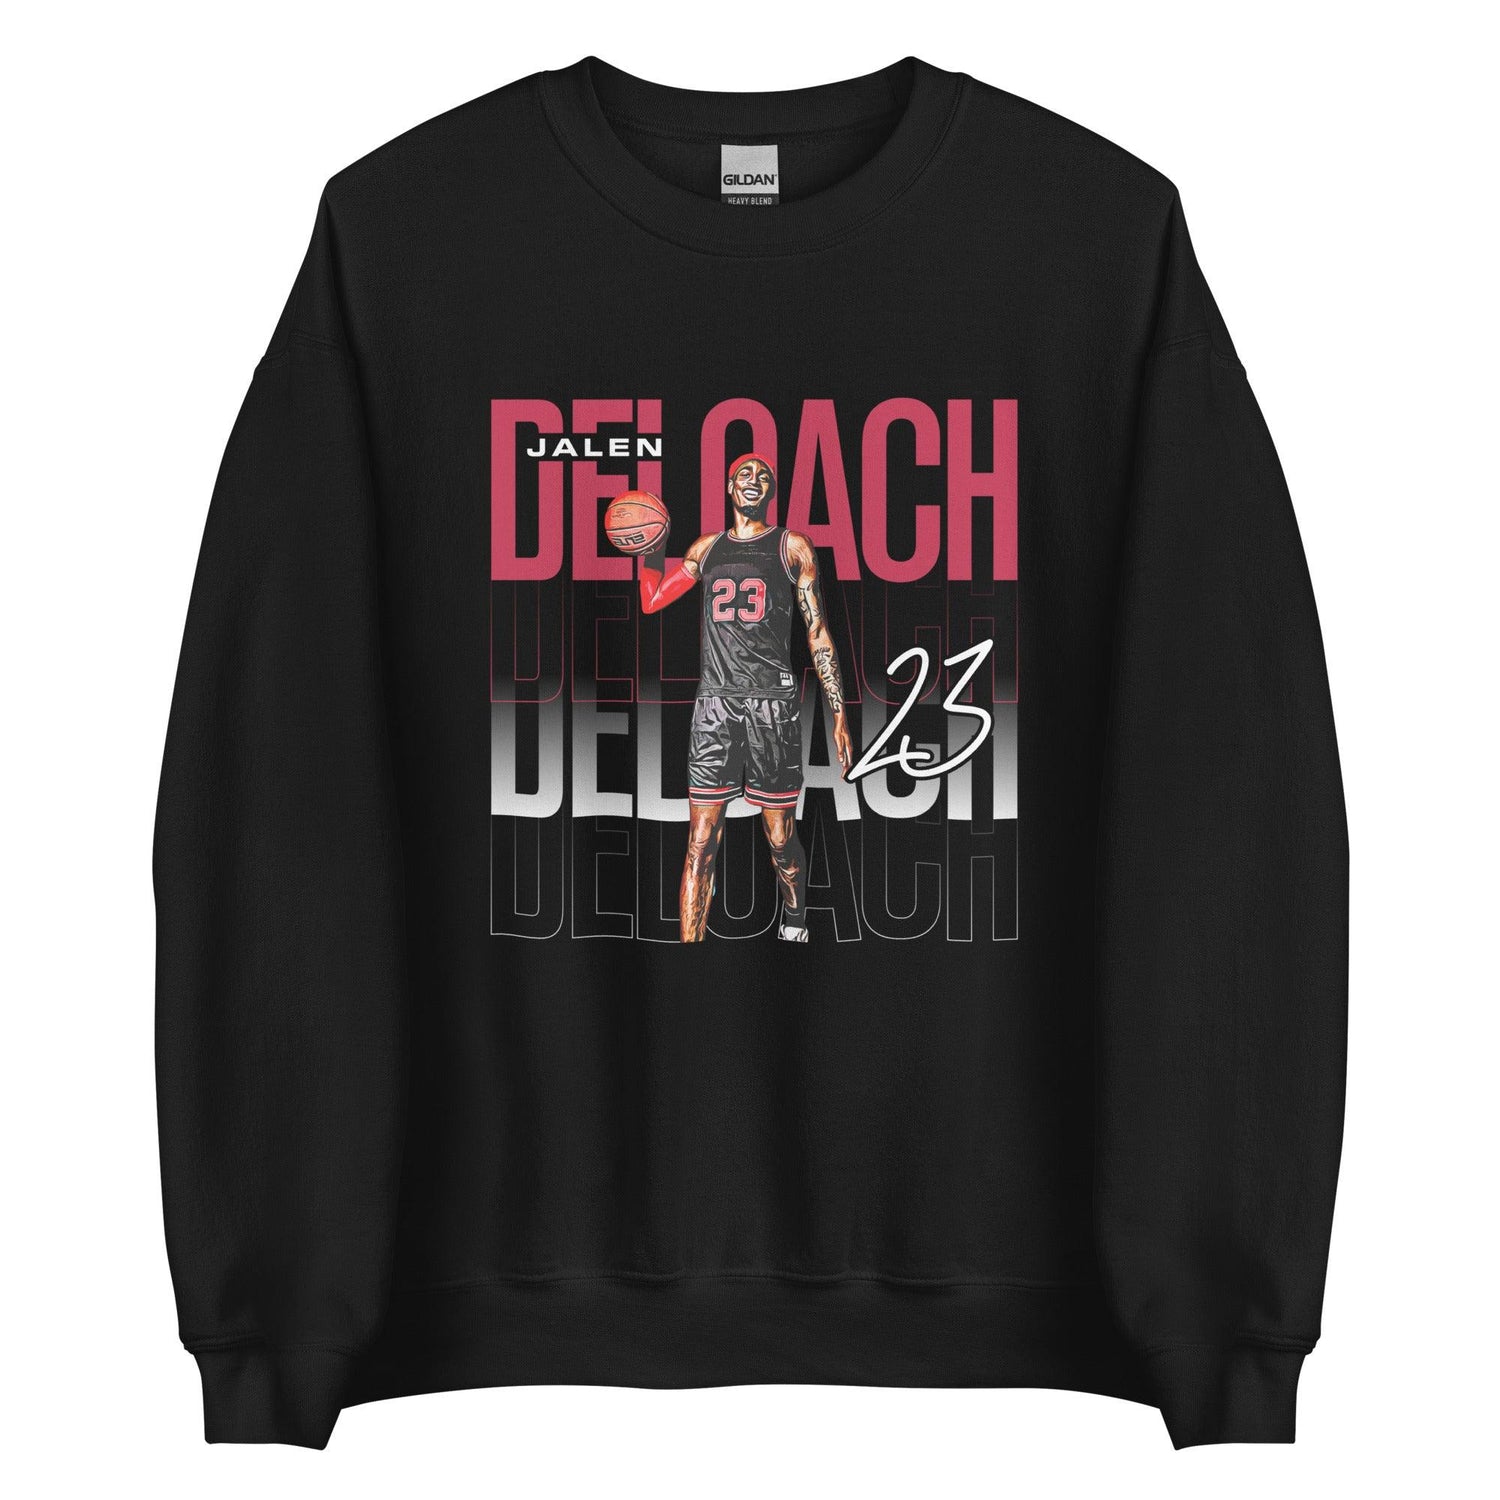 Jalen Deloach "Gameday" Sweatshirt - Fan Arch